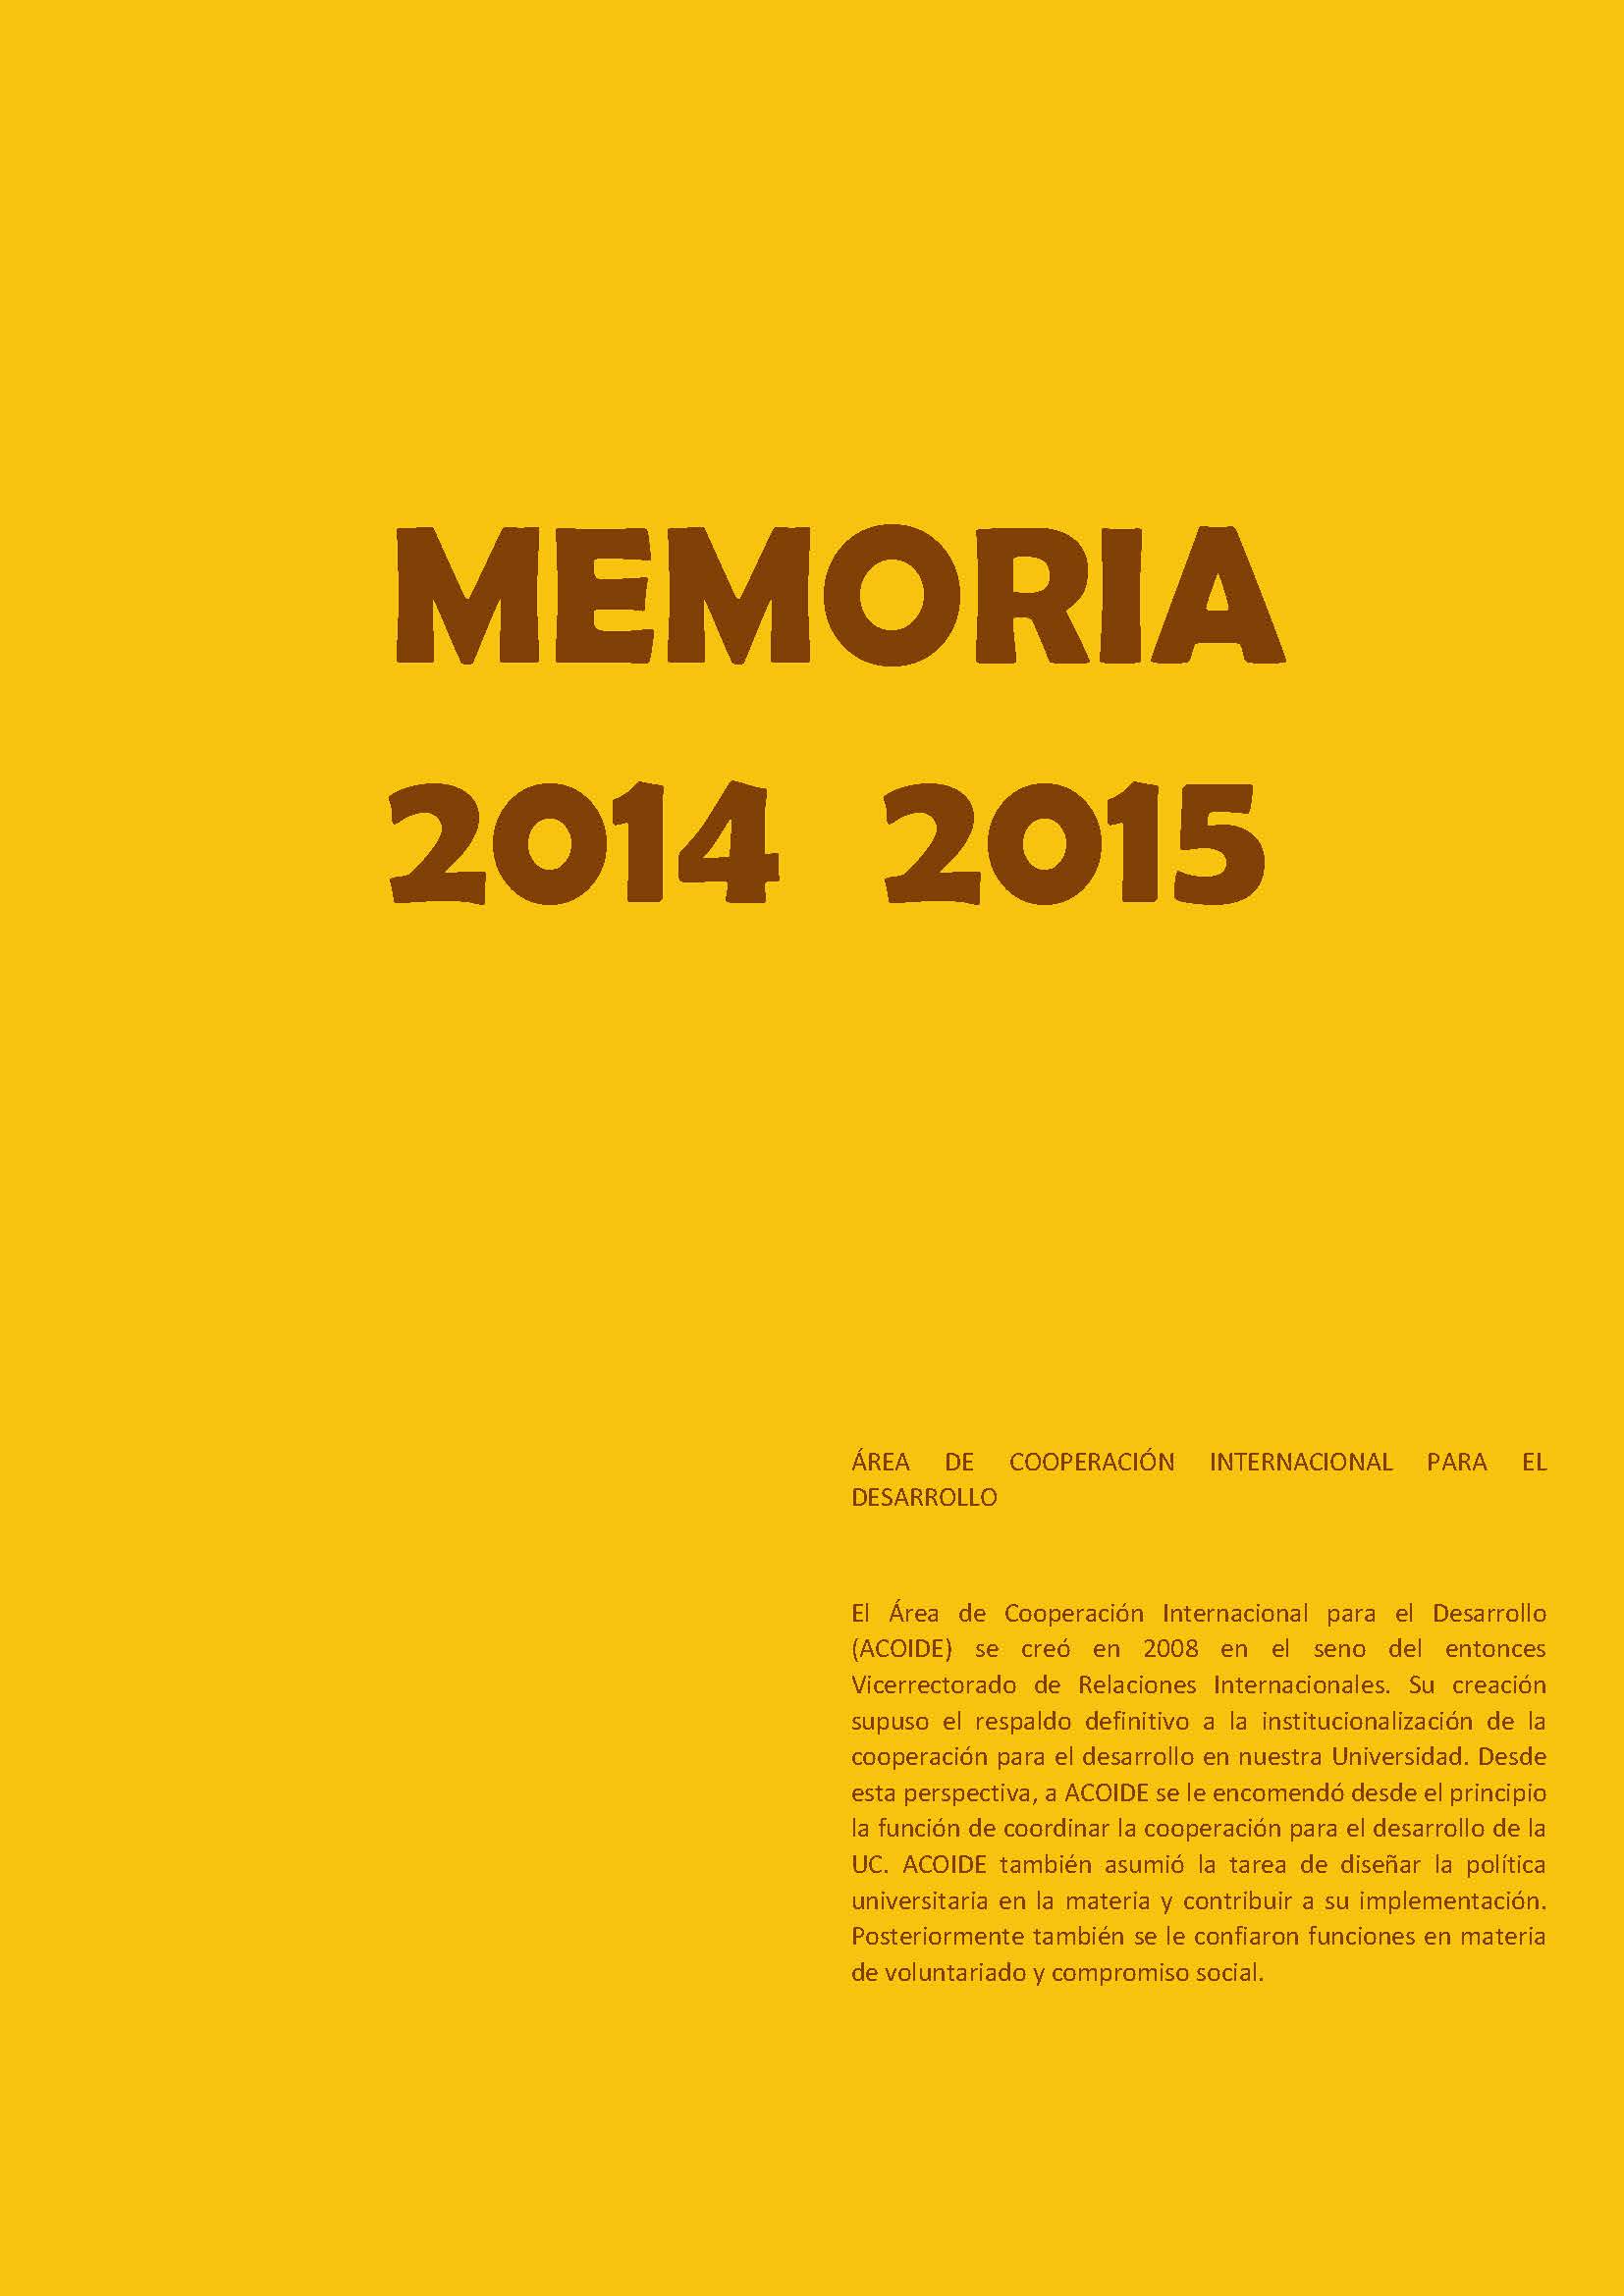 Memoria de ACOIDE 2014/2015